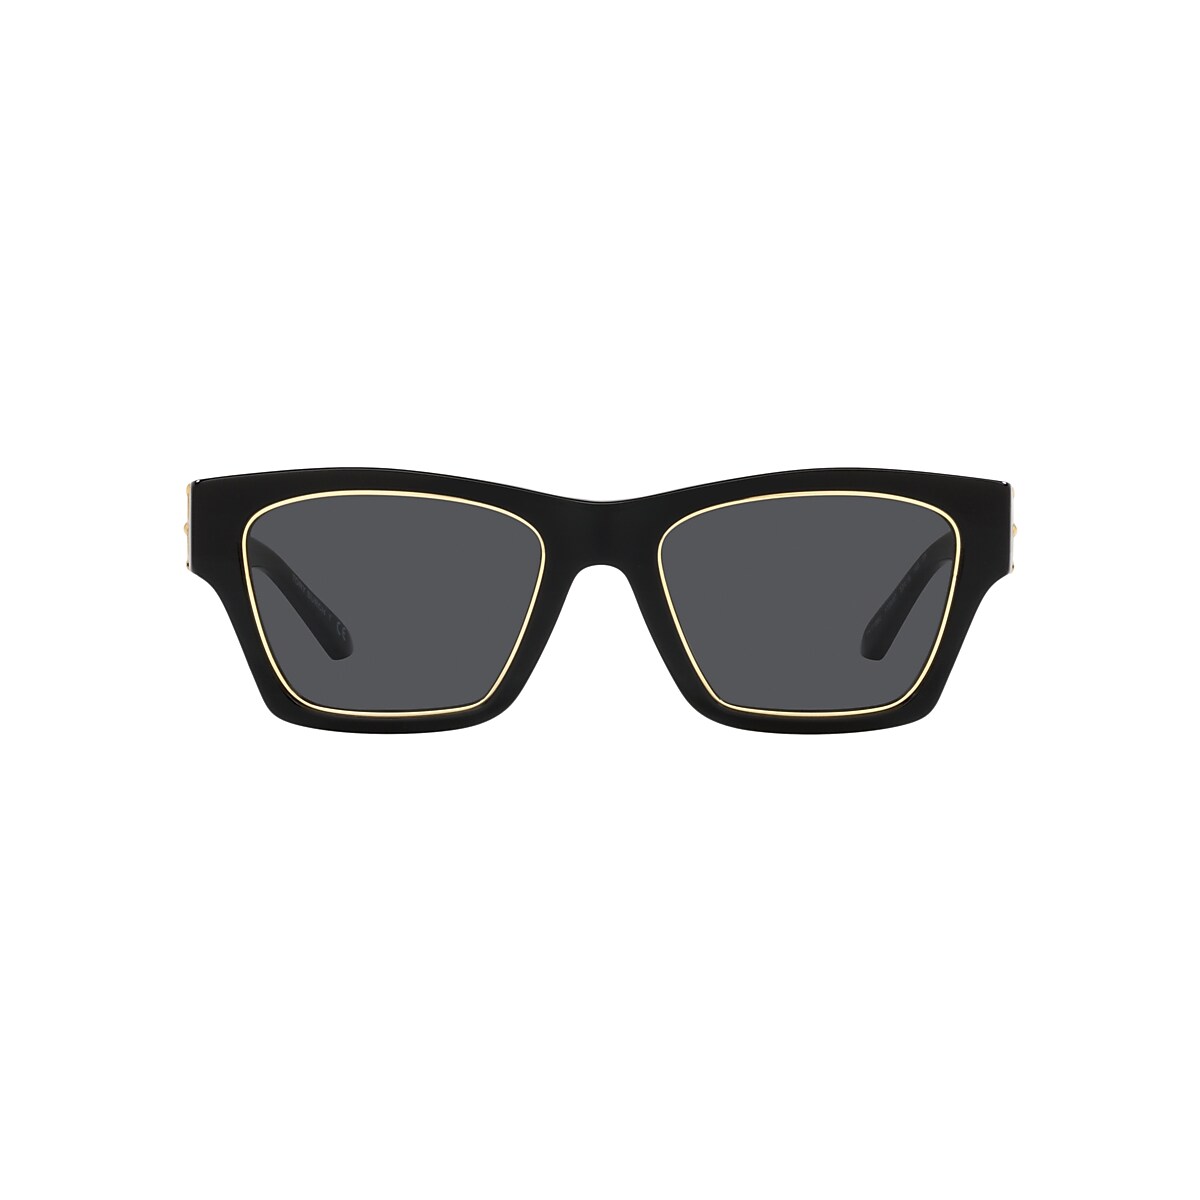 Tory Burch Golden Rim Square Acetate Sunglasses Neiman Marcus |  